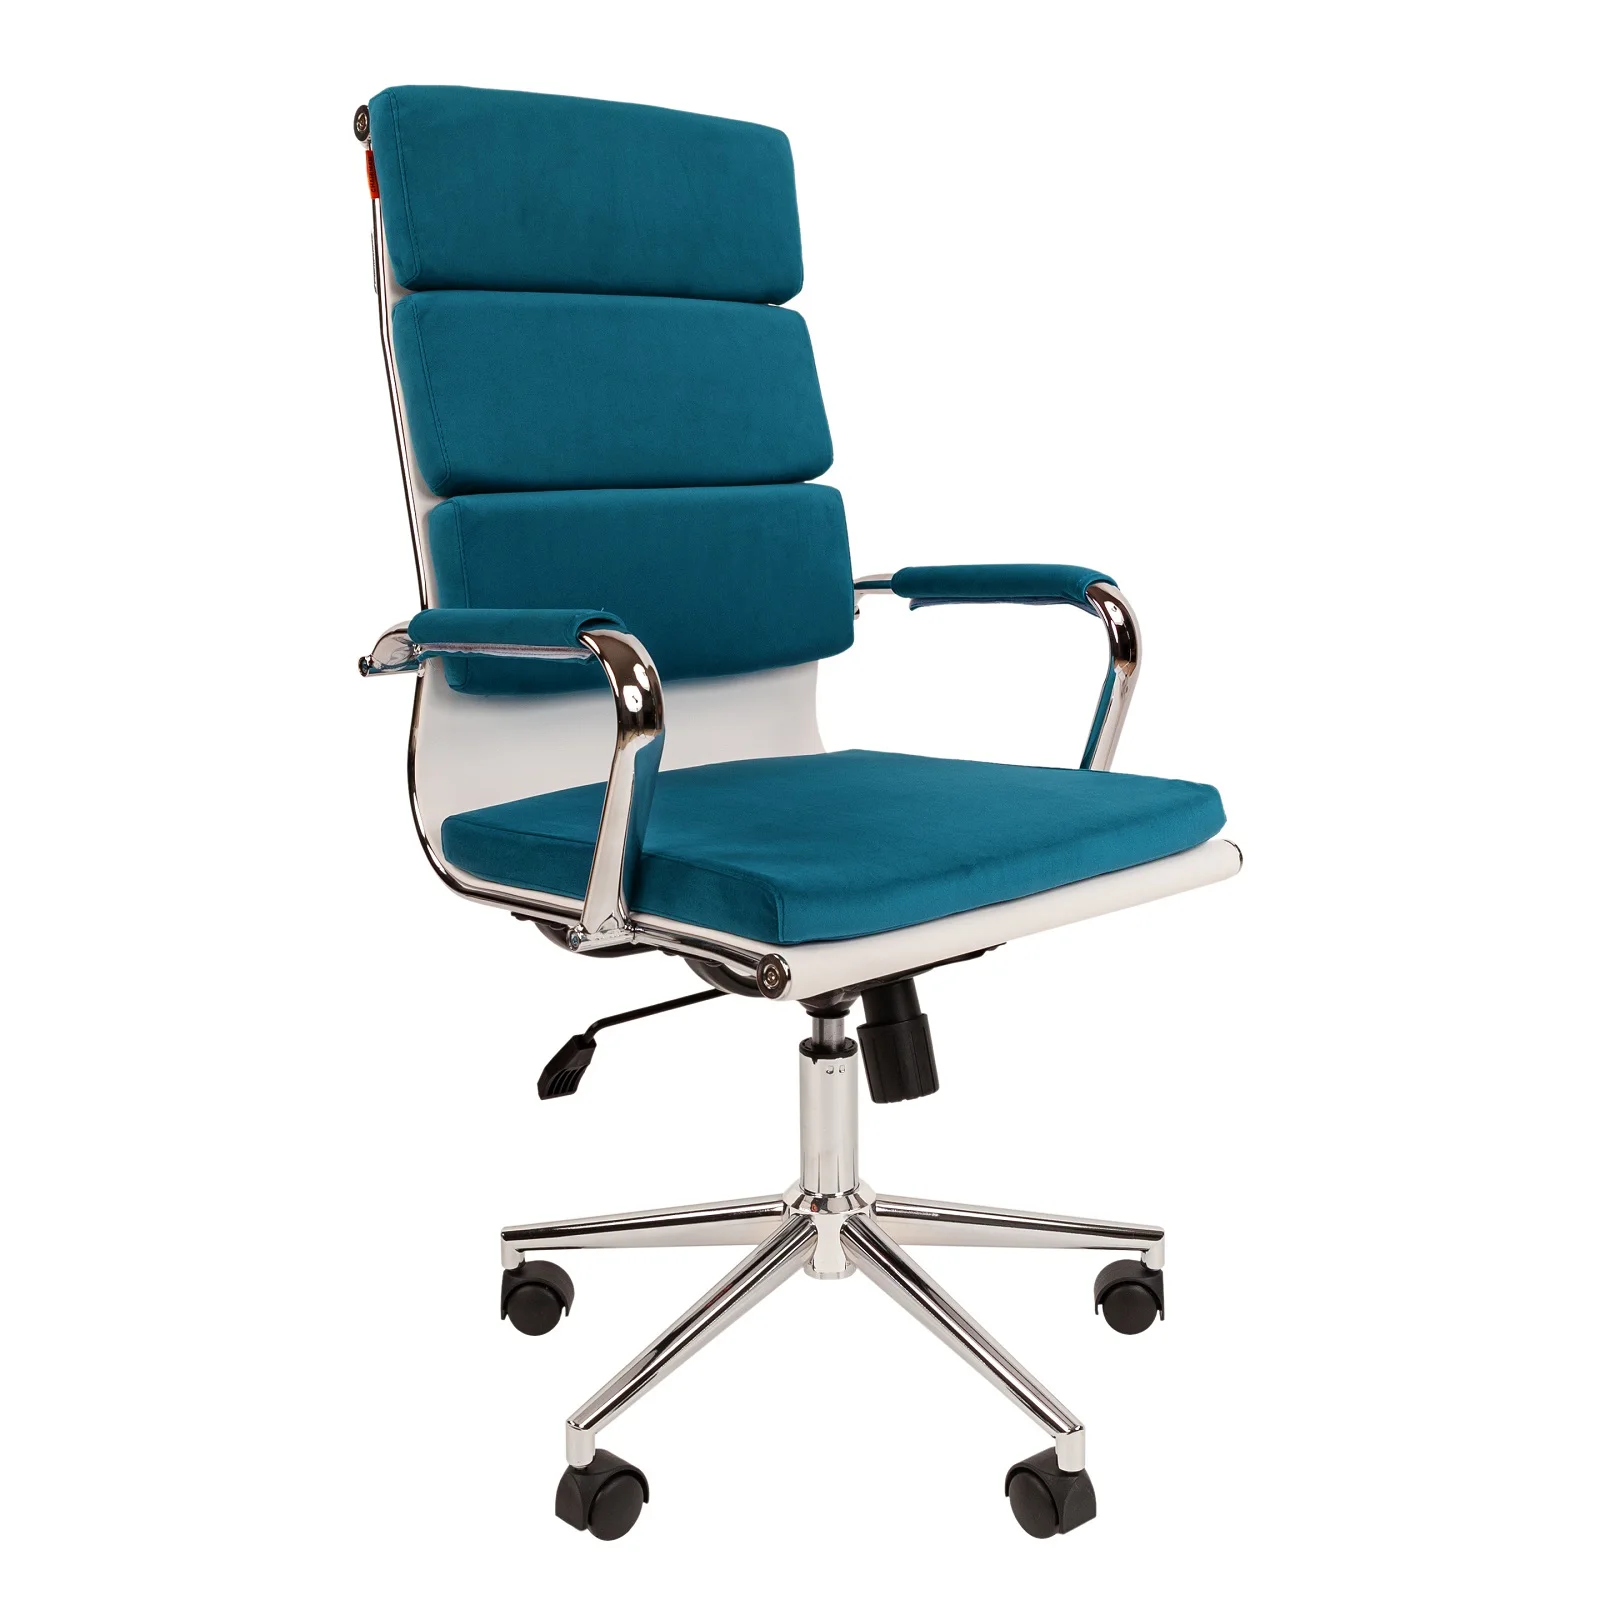 Дизайнерское мягкое кресло CHAIRMAN HOME 750 обивка велюр на хромированном каркасе в